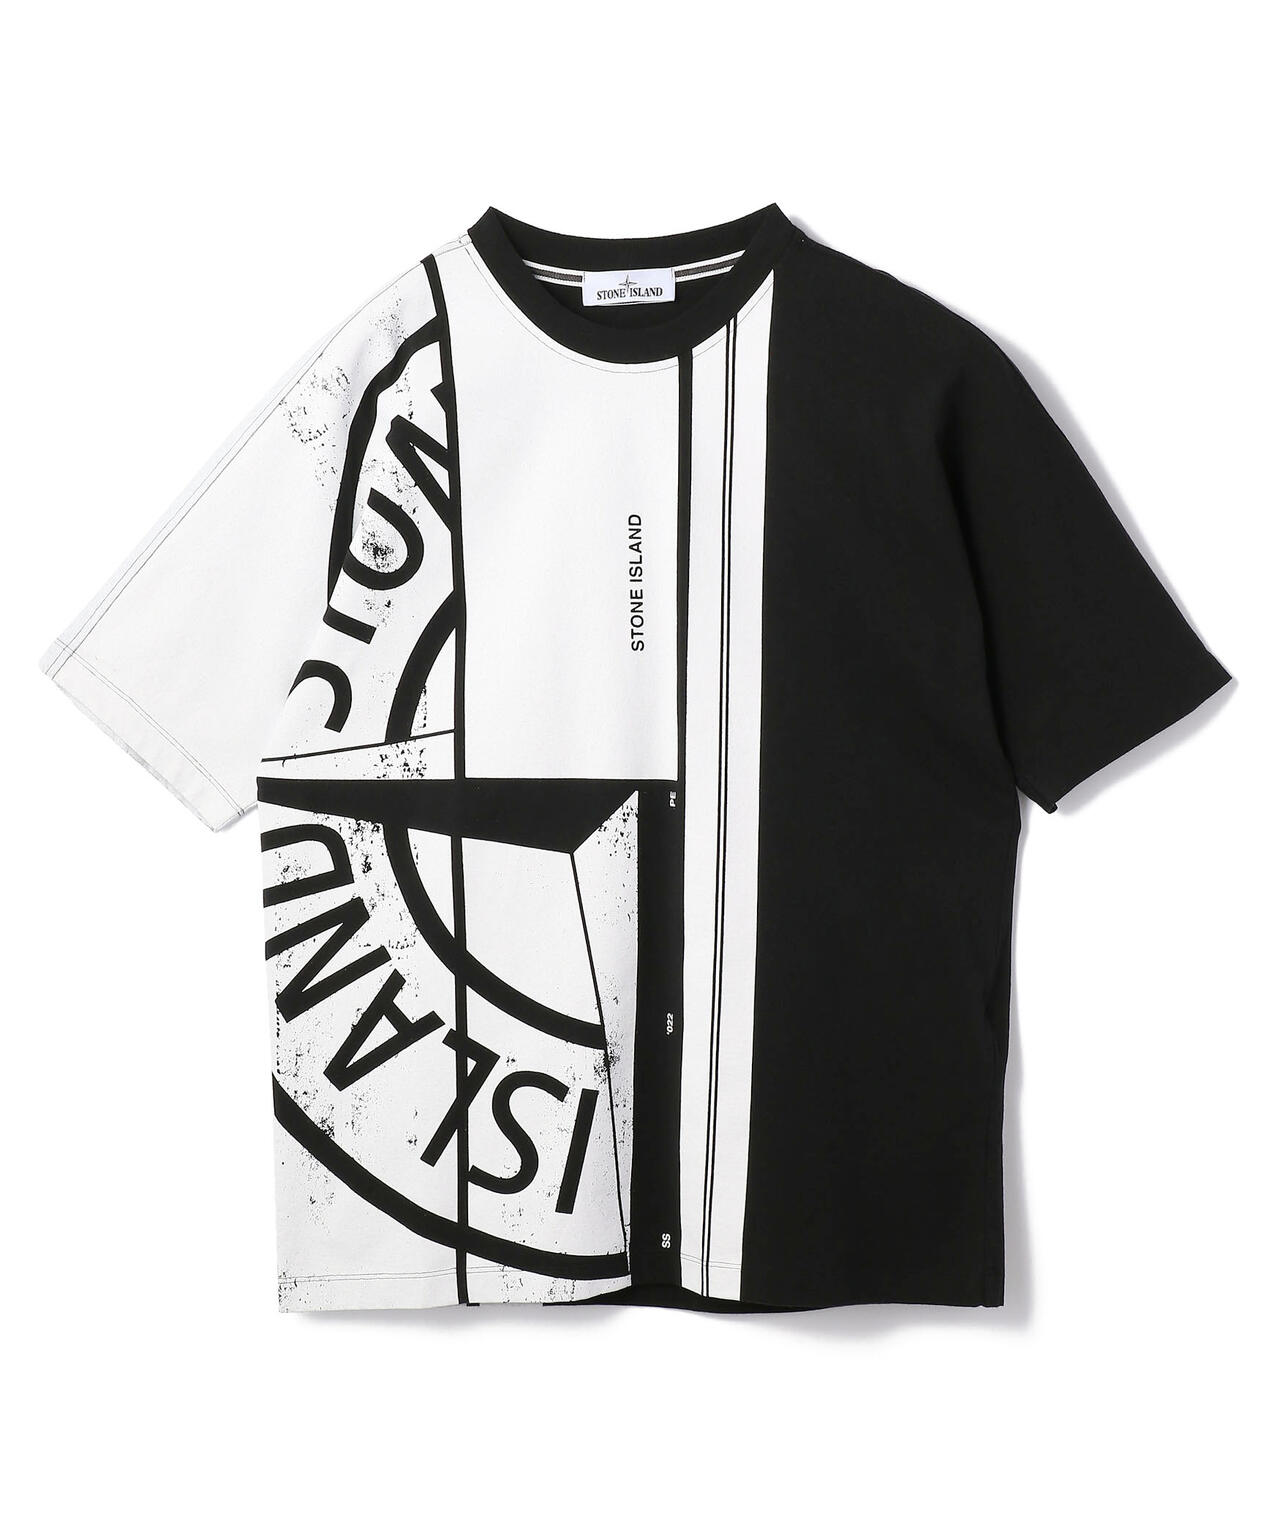 新品 VIA VALENTINO ロゴ刺繍 モックネック 半袖Tシャツ 黒/M